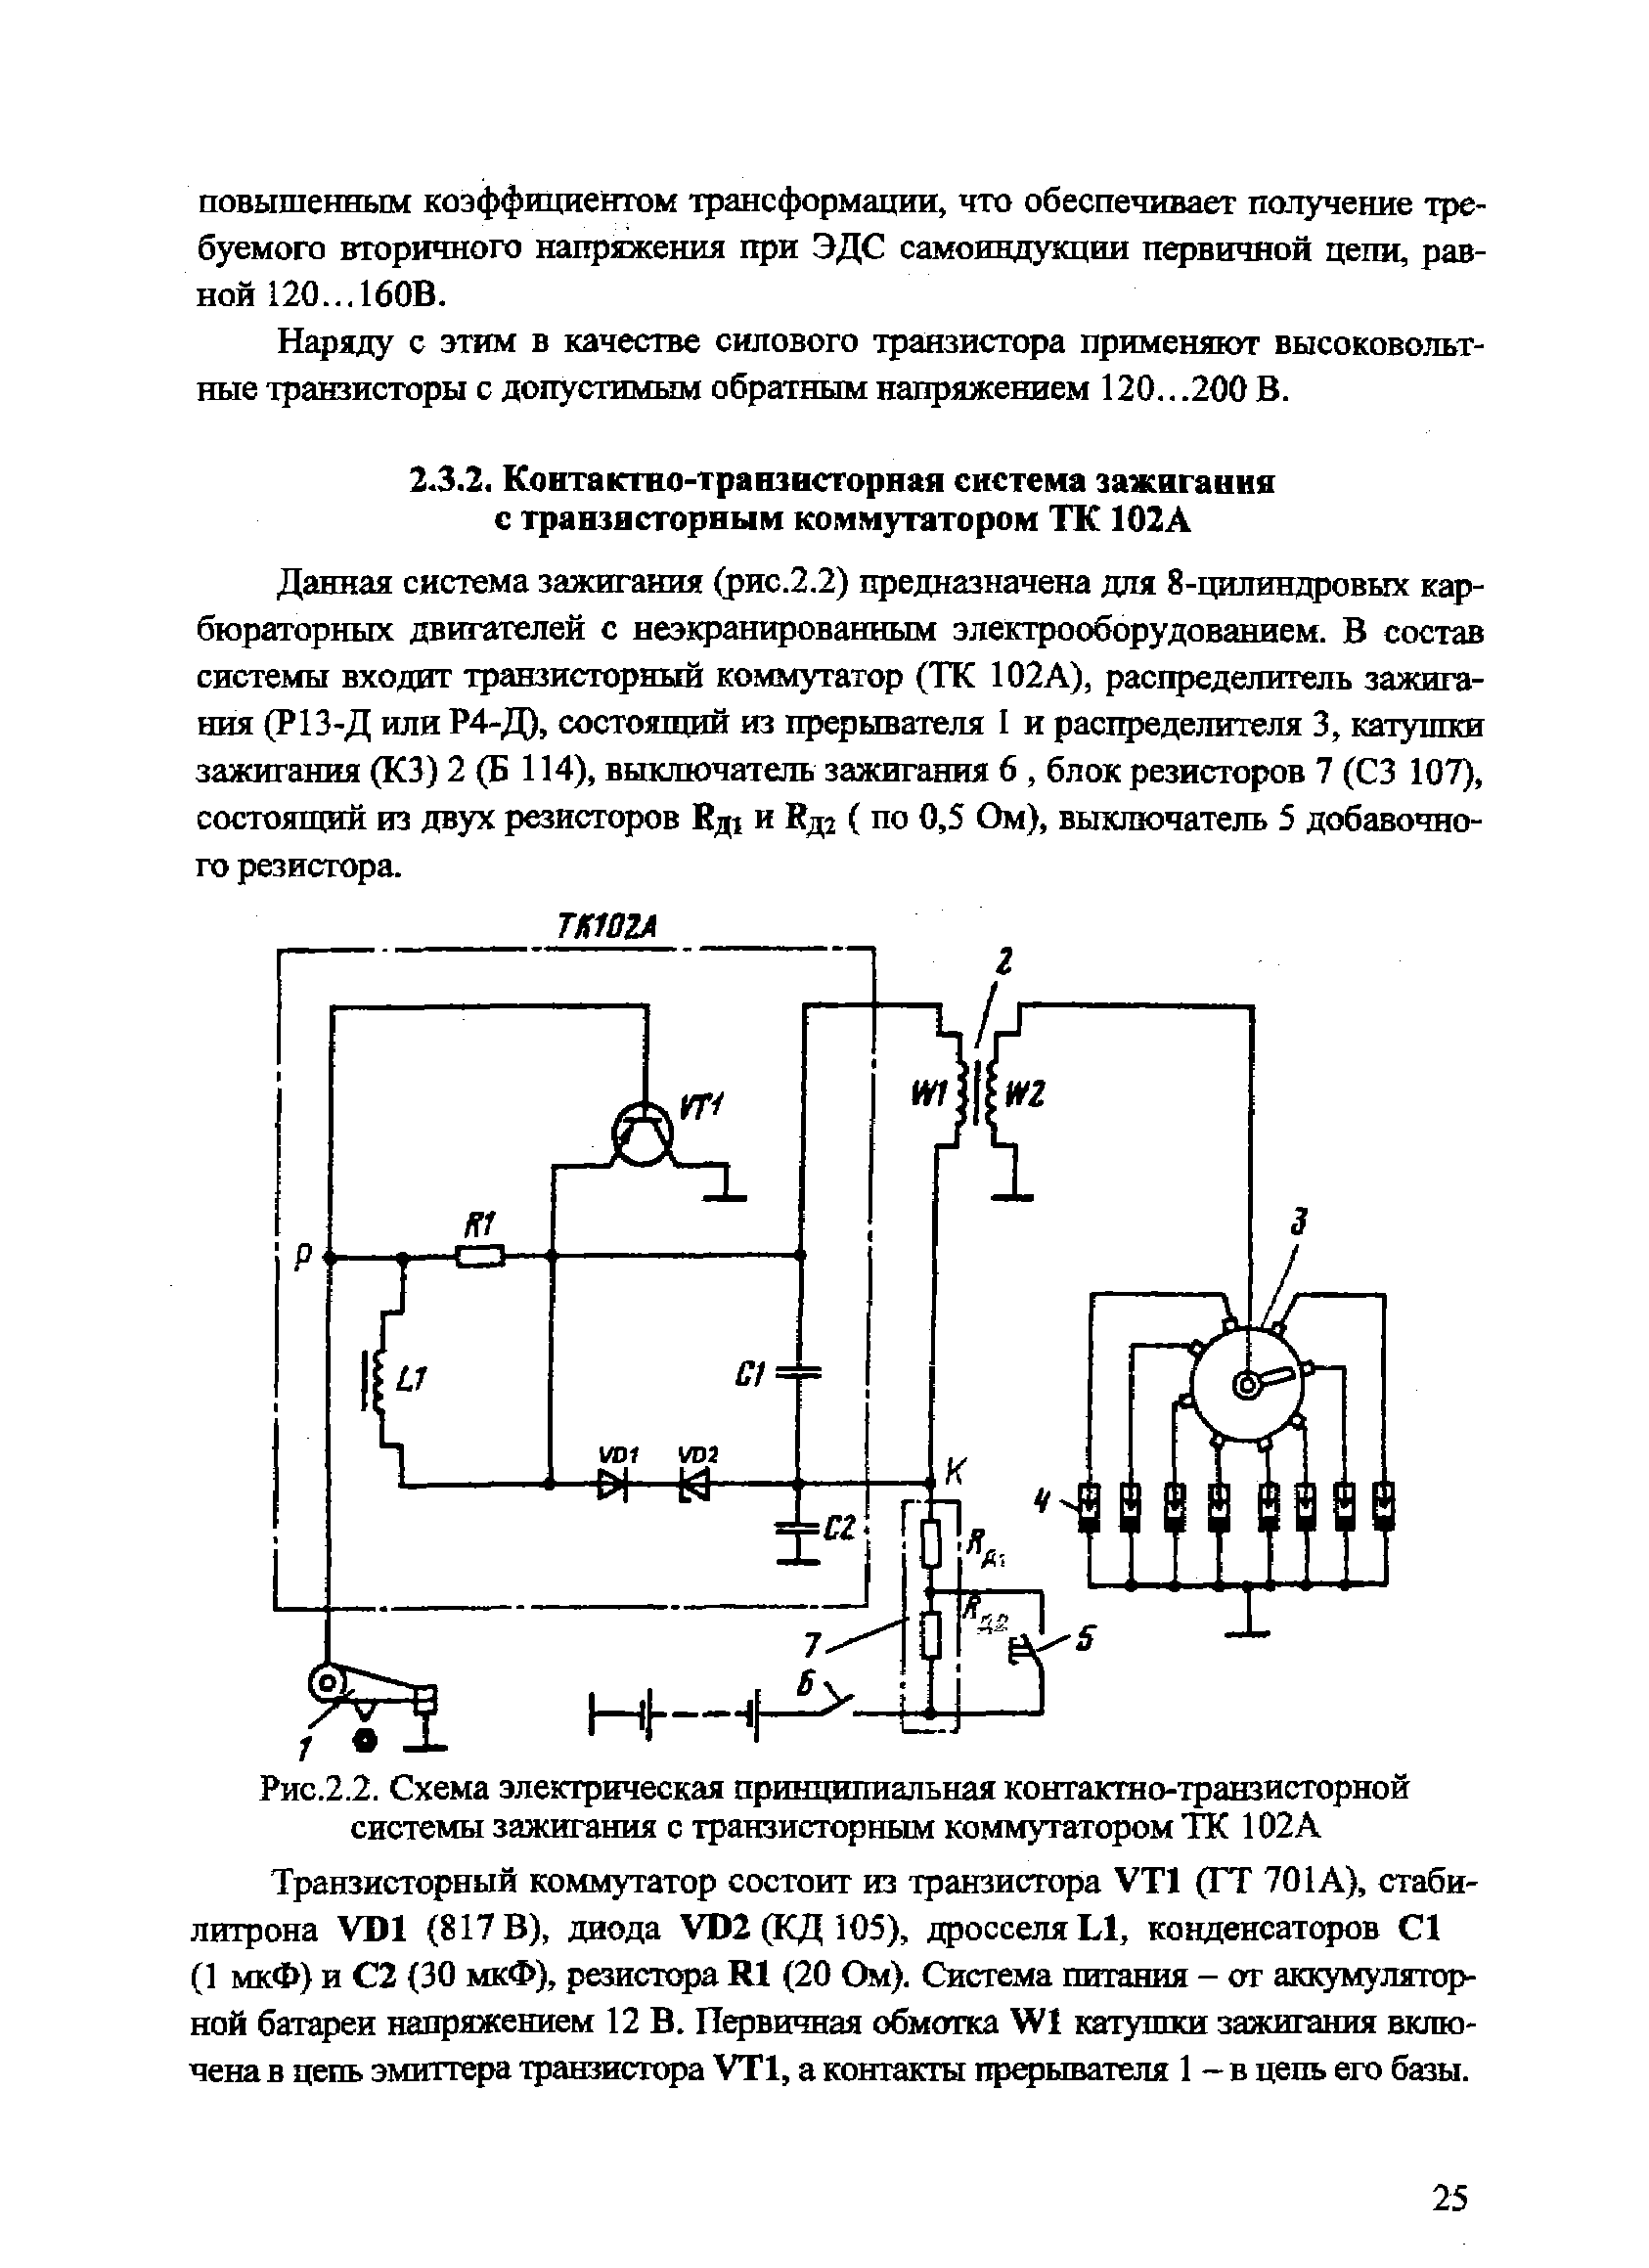 Рис.2.2. <a href="/info/267326">Схема электрическая принципиальная</a> контактно-транзисторной системы зажигания с транзисторным коммутатором ТК 102 А
